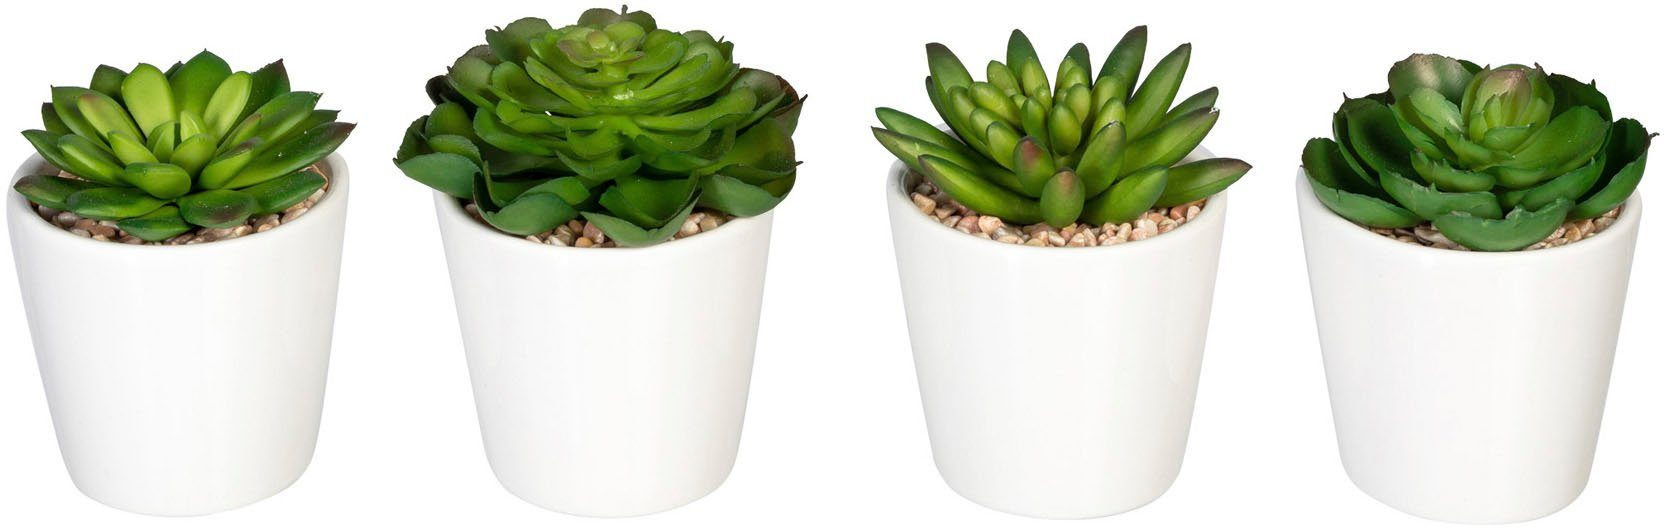 Creativ green Kunst-potplanten Echeverien in keramische pot, set van 4